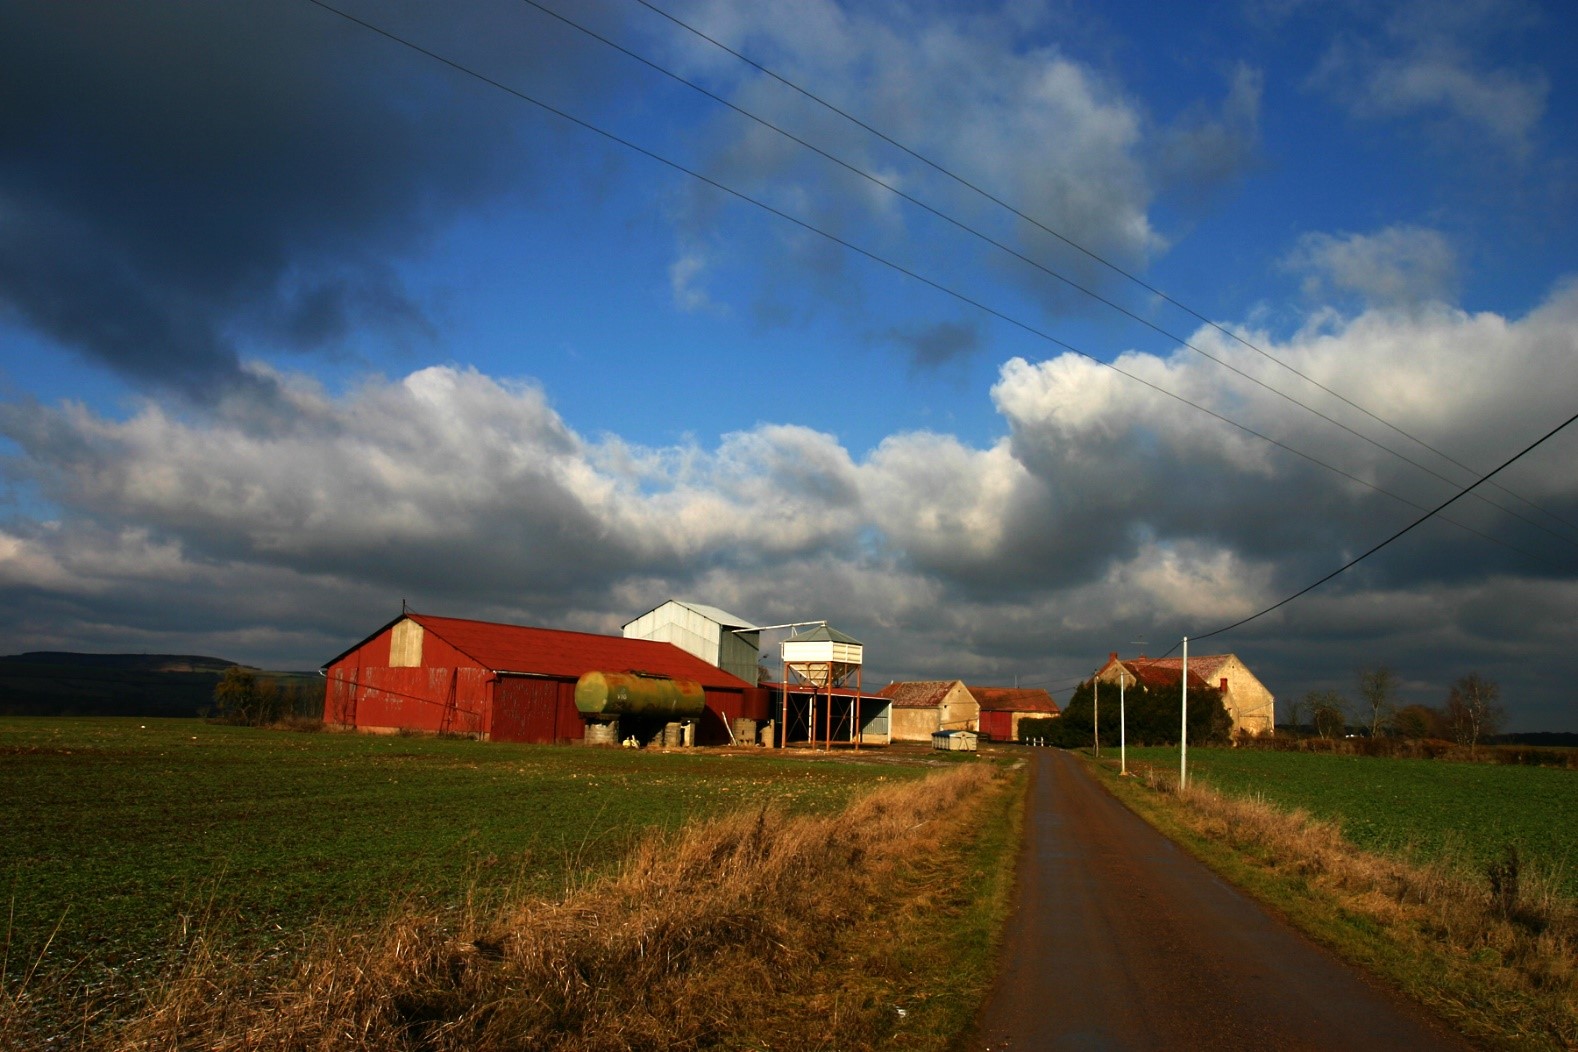 Visuel d'une route de campagne avec la vue d'une ferme agricole et des nuages très bas sous un ciel très bleu